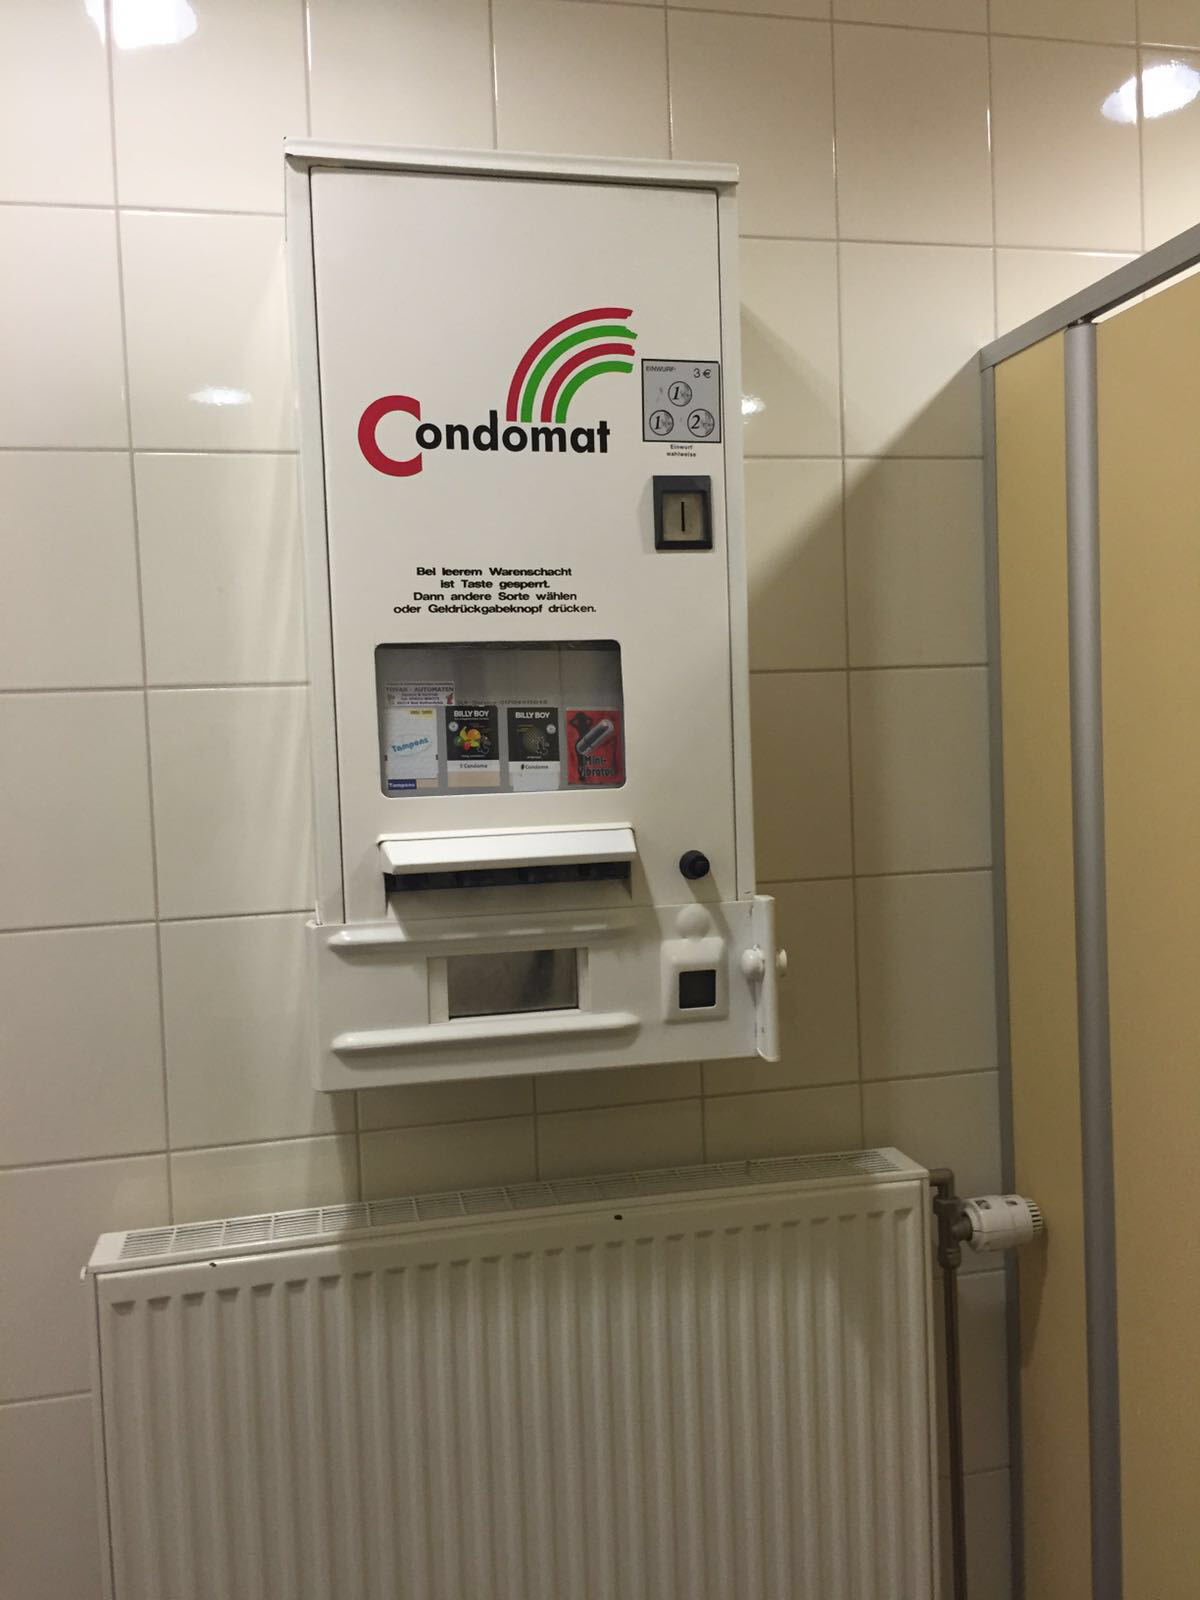 コンドーム バイブ自販機 アウトバーンサービスエリア Nederlanden地位向上委員会